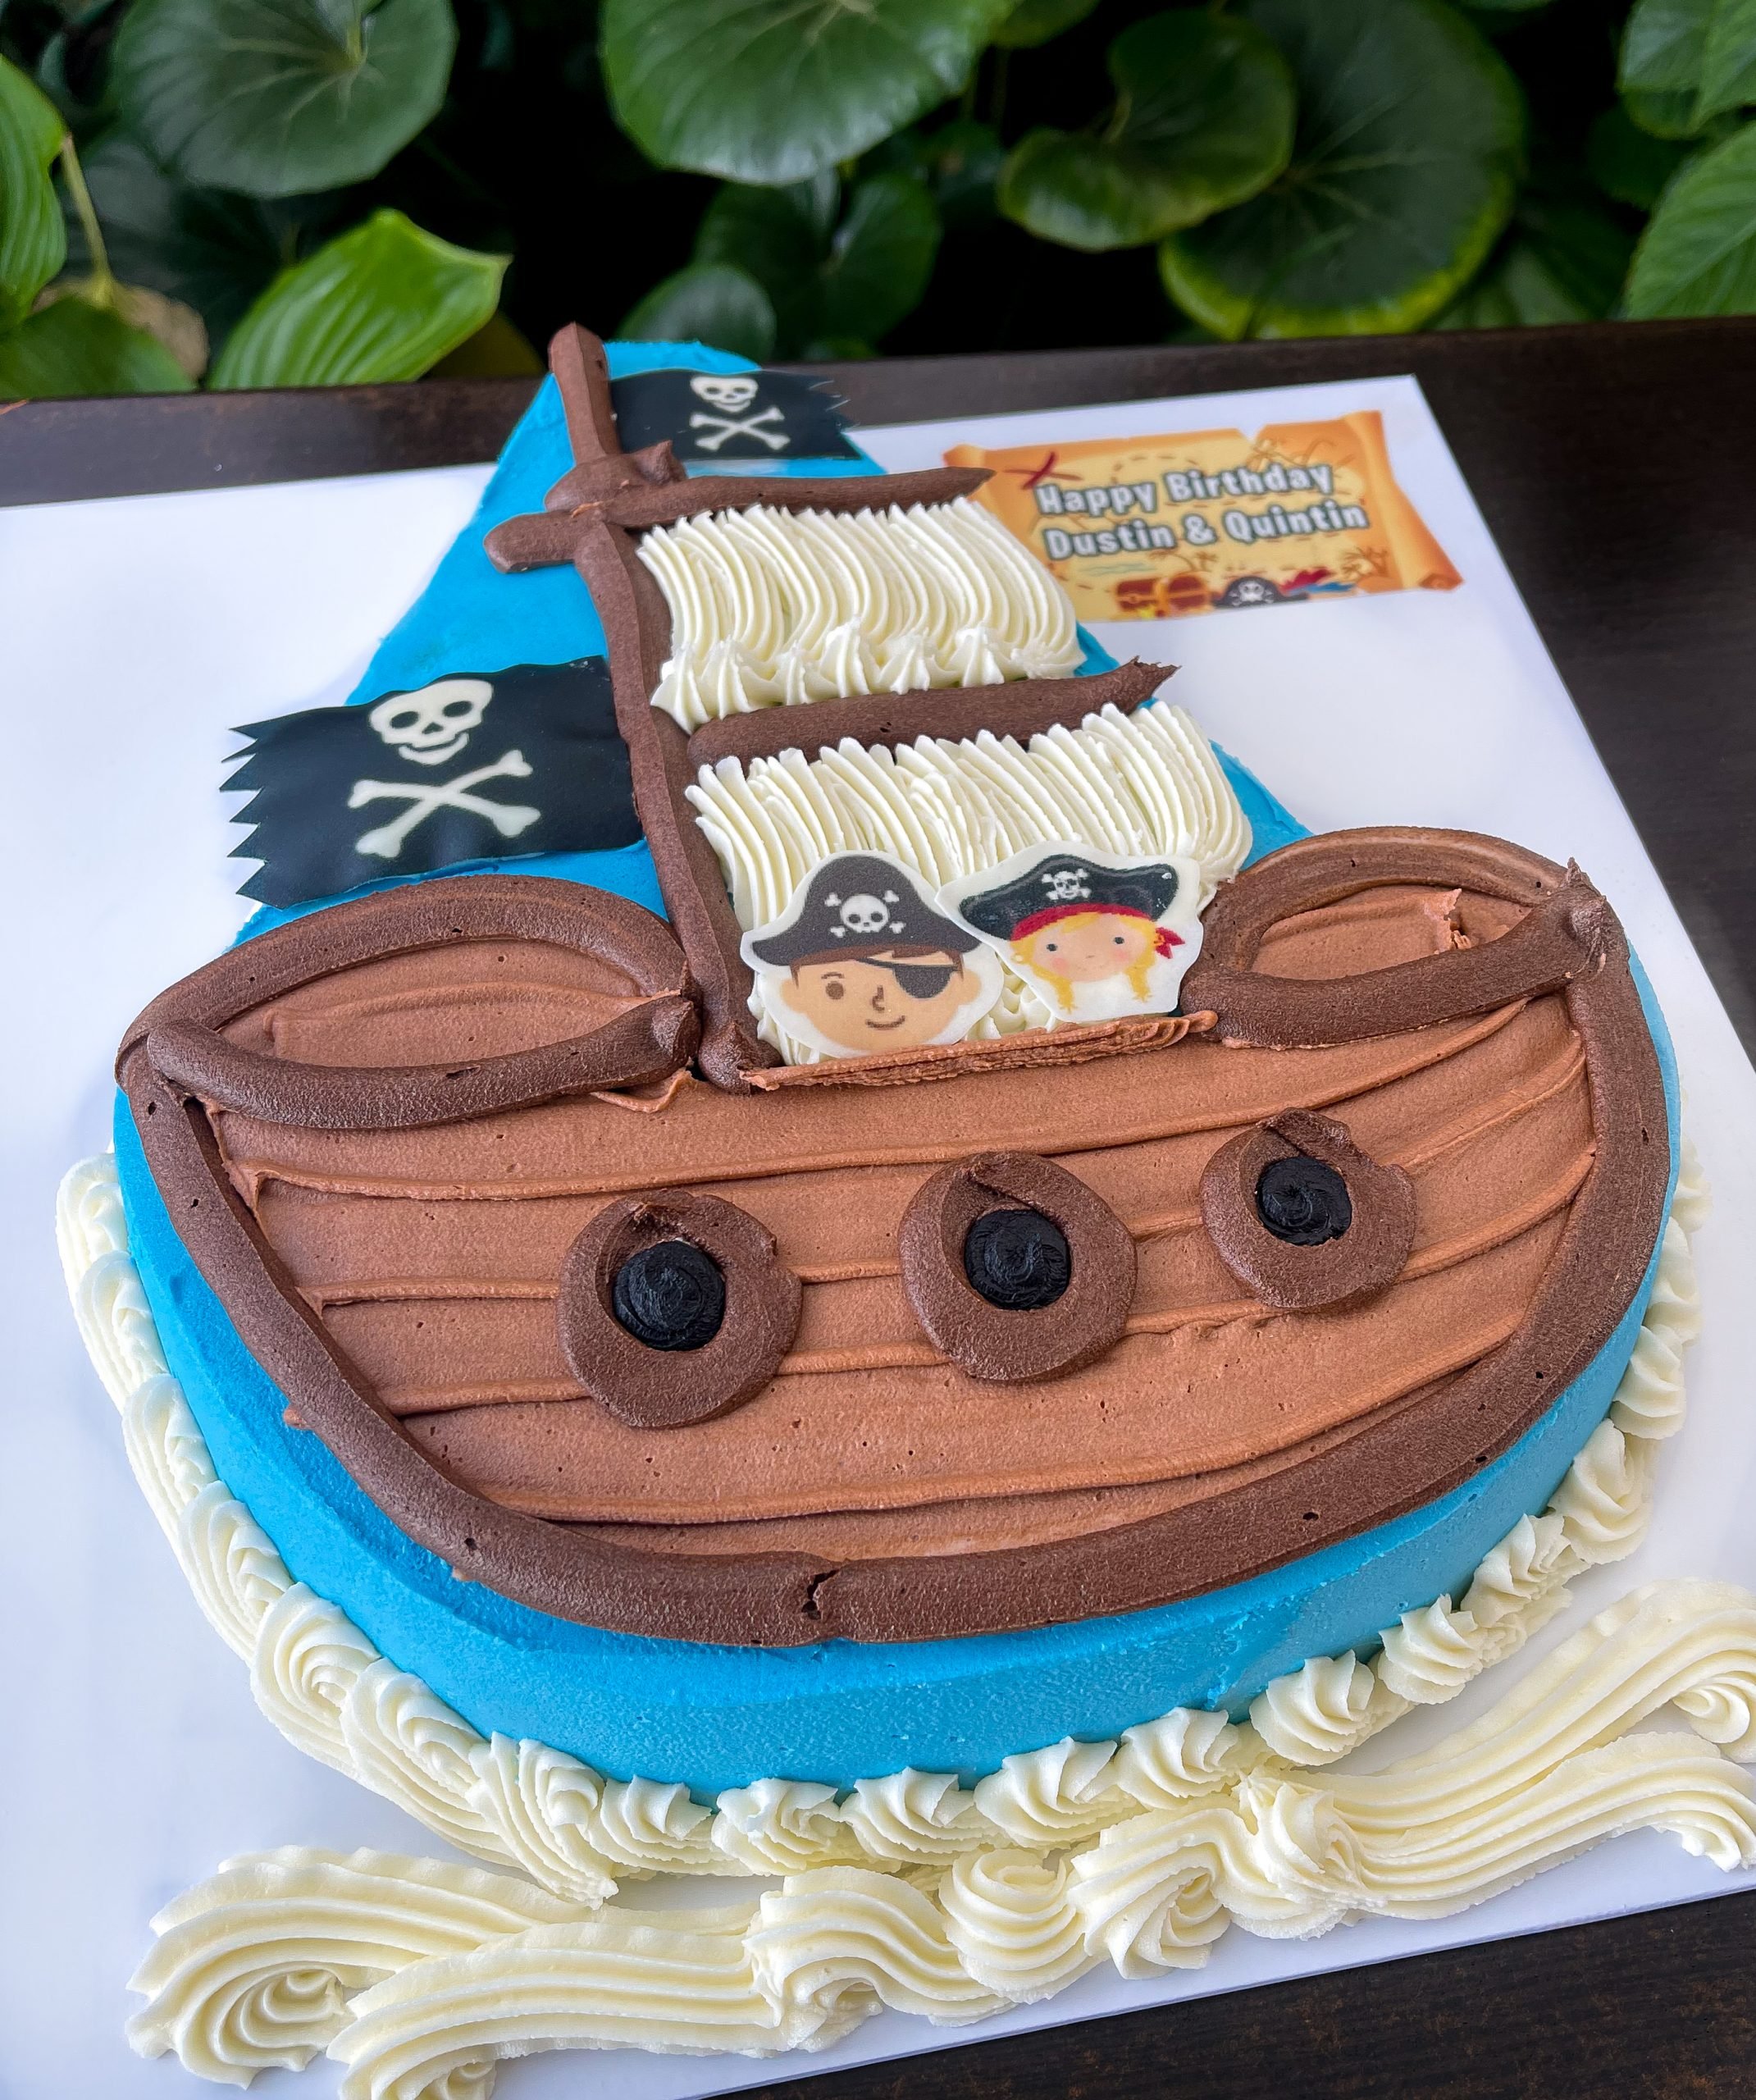 Pirate Plunder – Kids' Cake Boxes, LLC